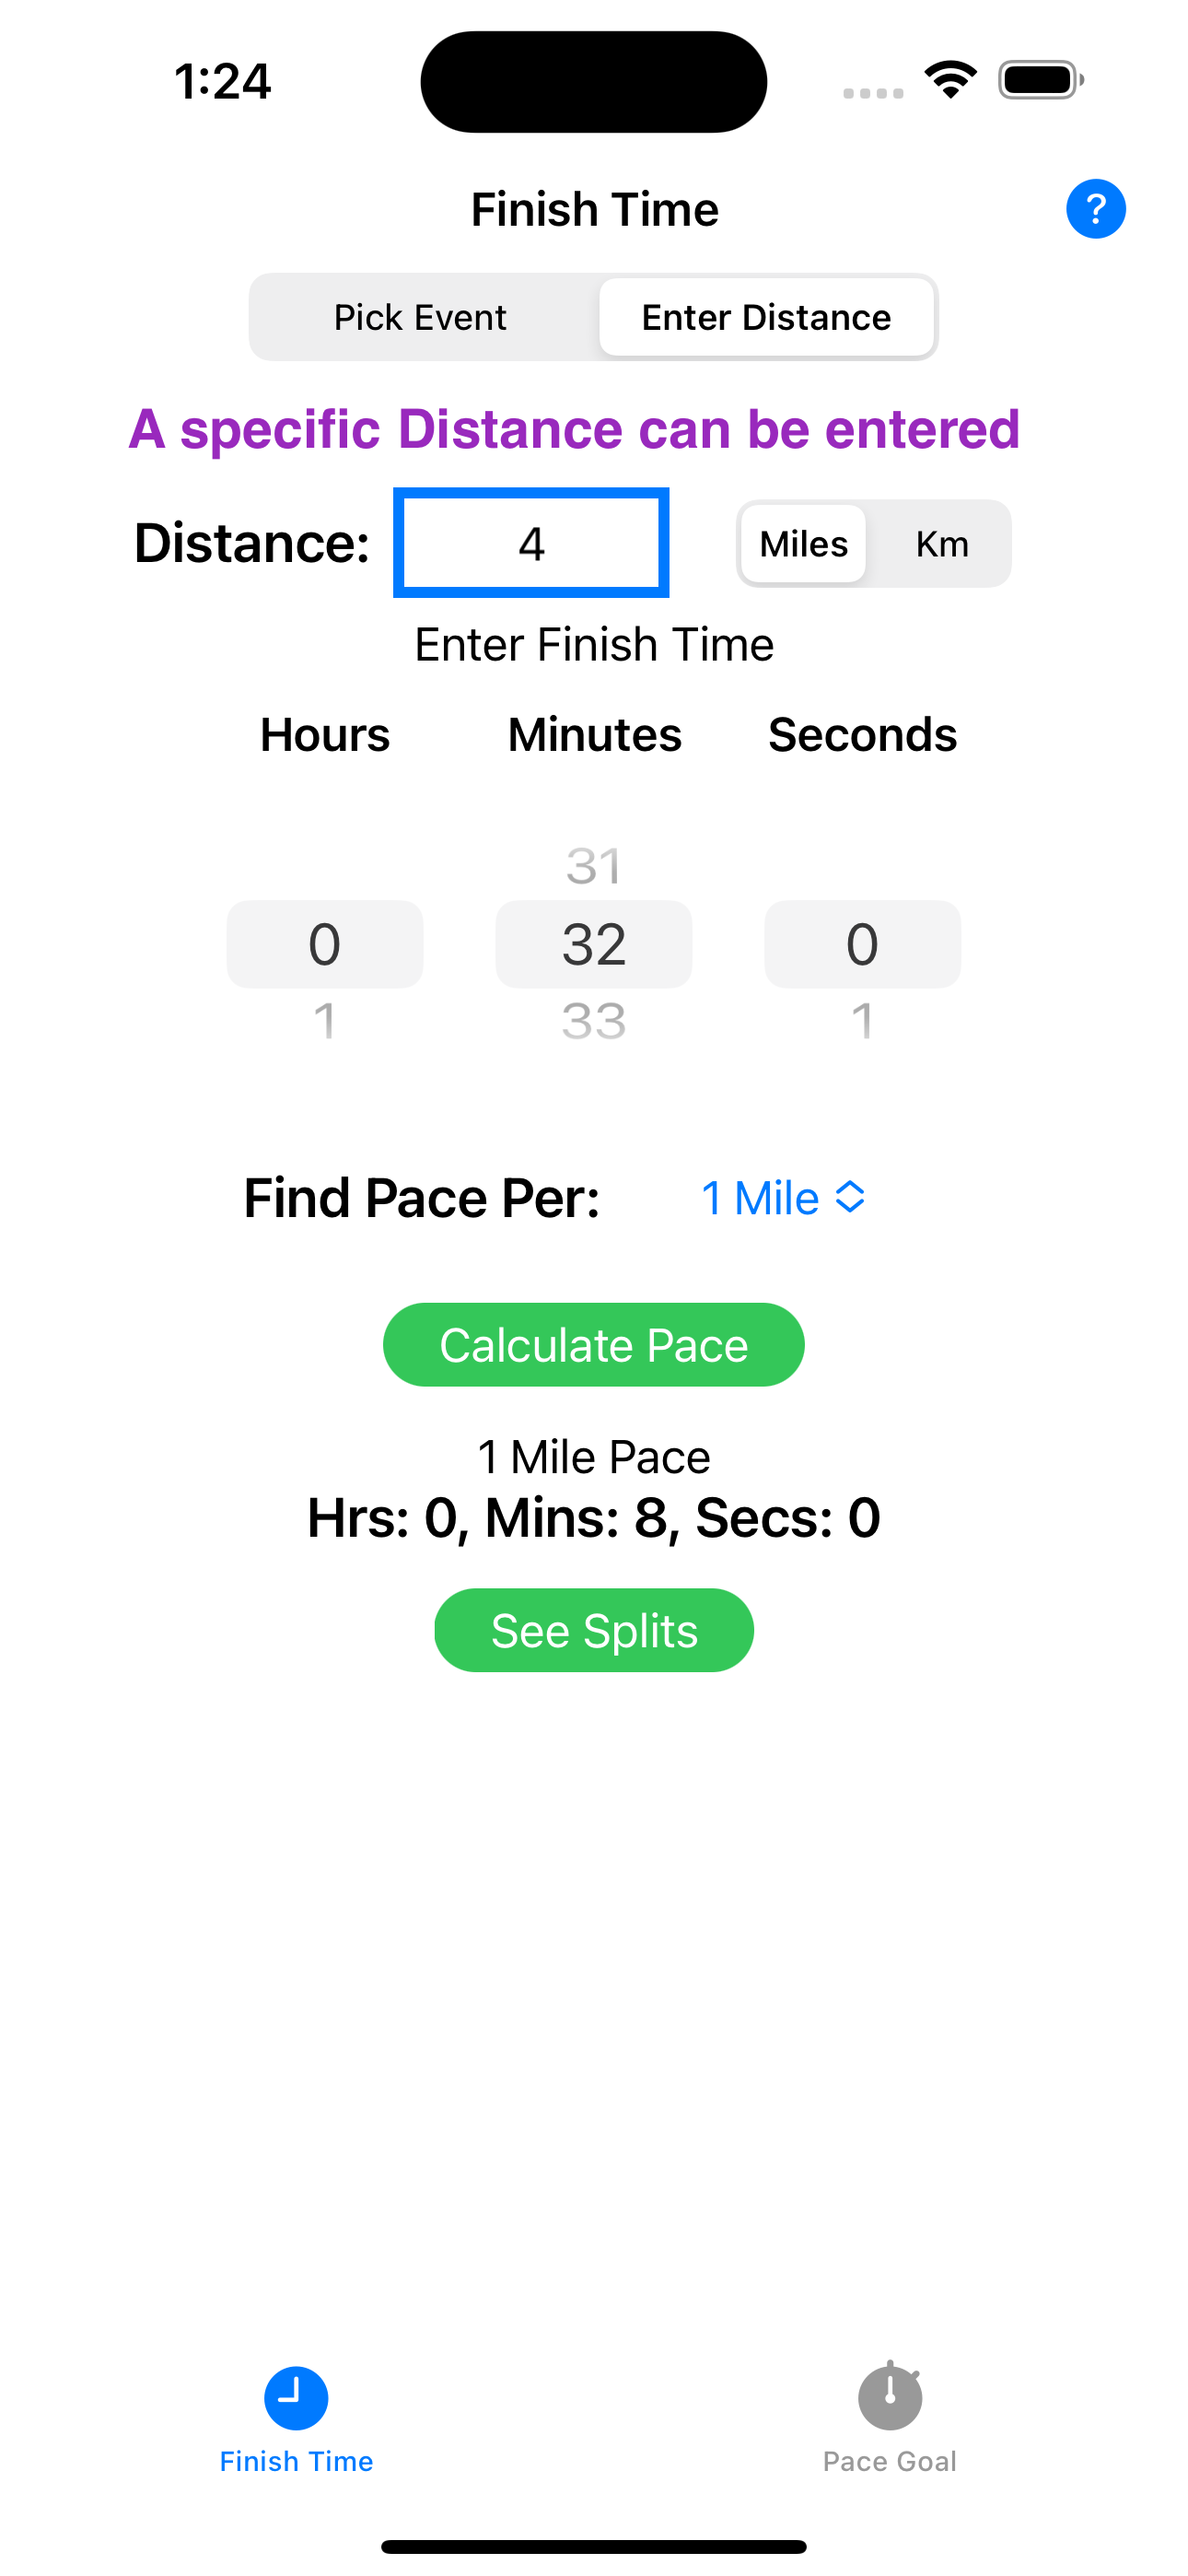 Race Pace